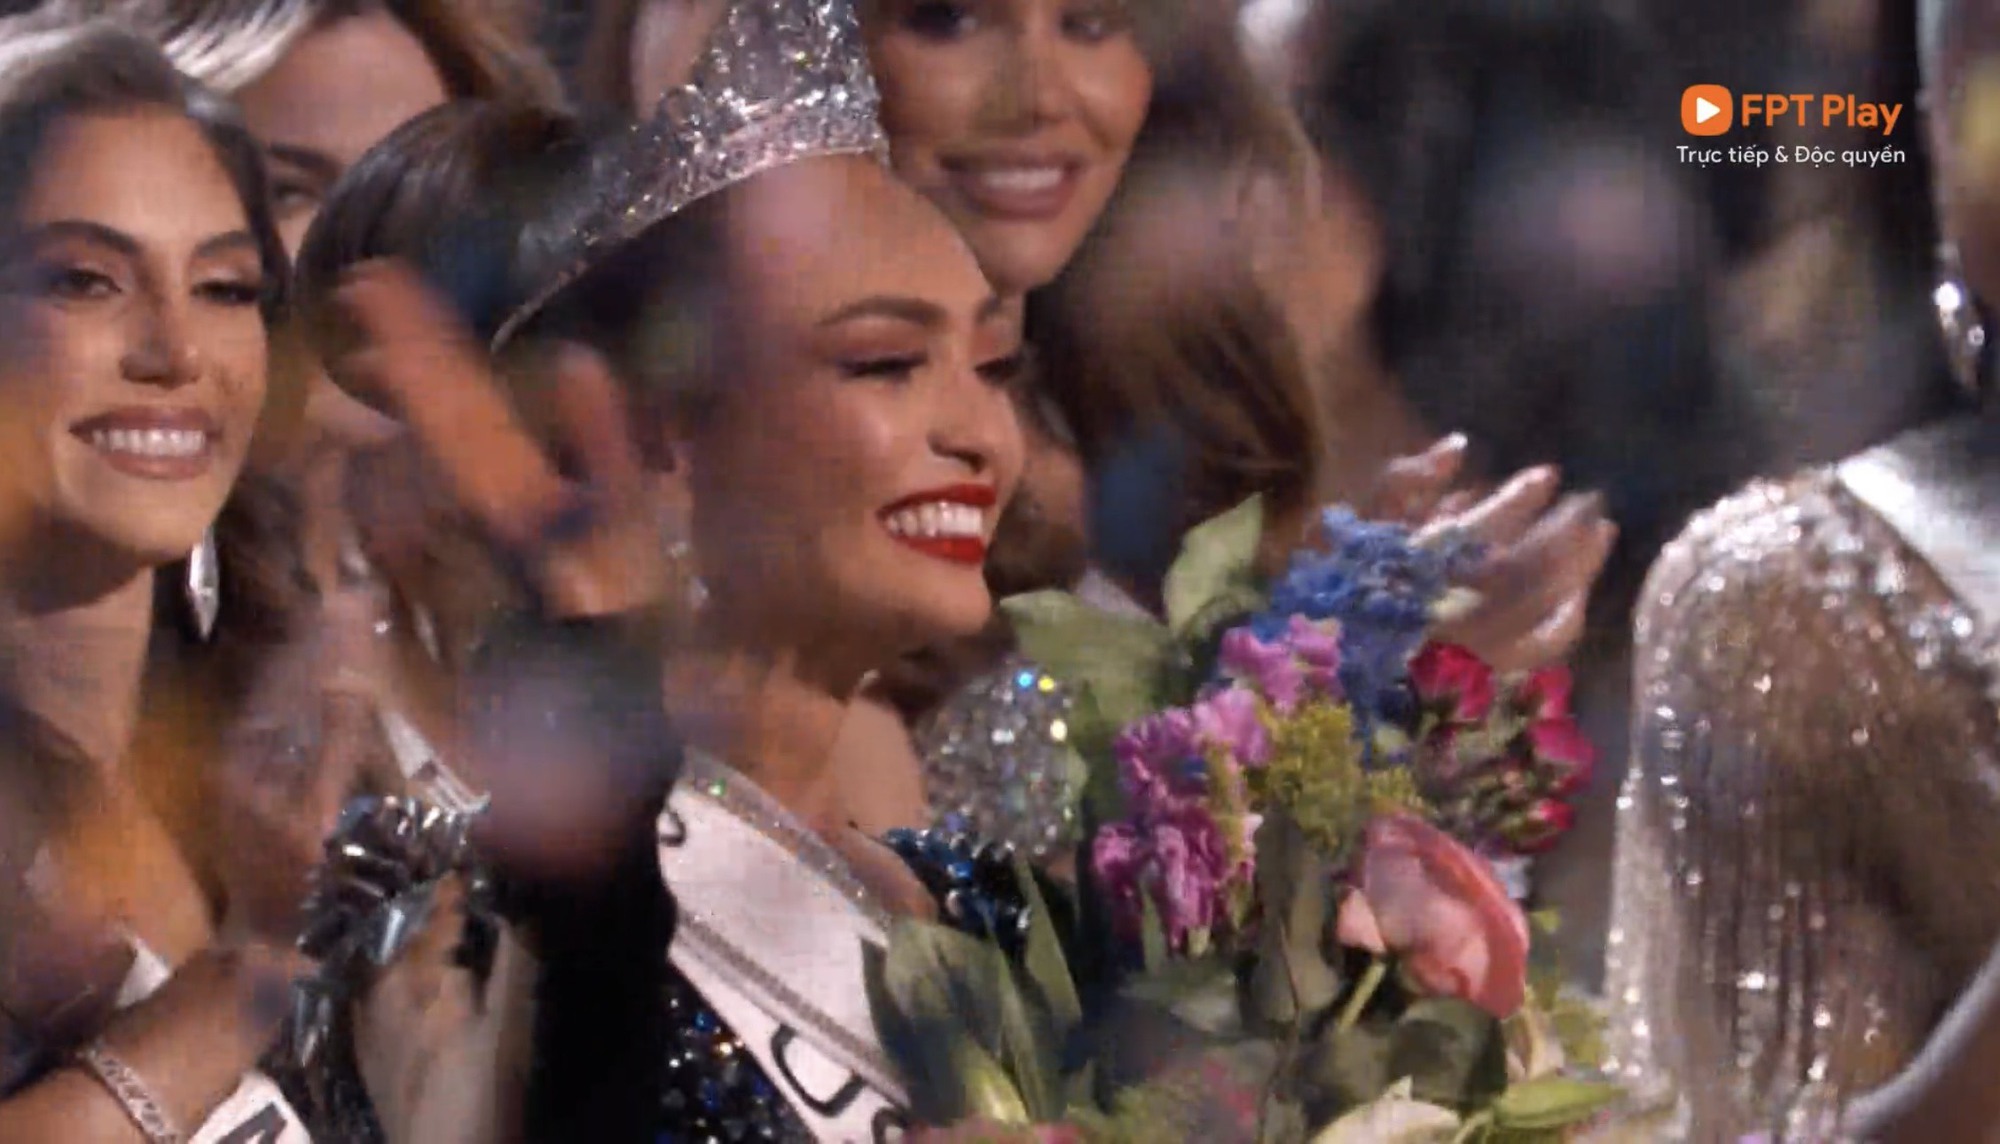 Chung kết Miss Universe 2022: Vương miện danh giá thuộc về người đẹp Mỹ, Ngọc Châu out top 16 đầy đáng tiếc - Ảnh 3.